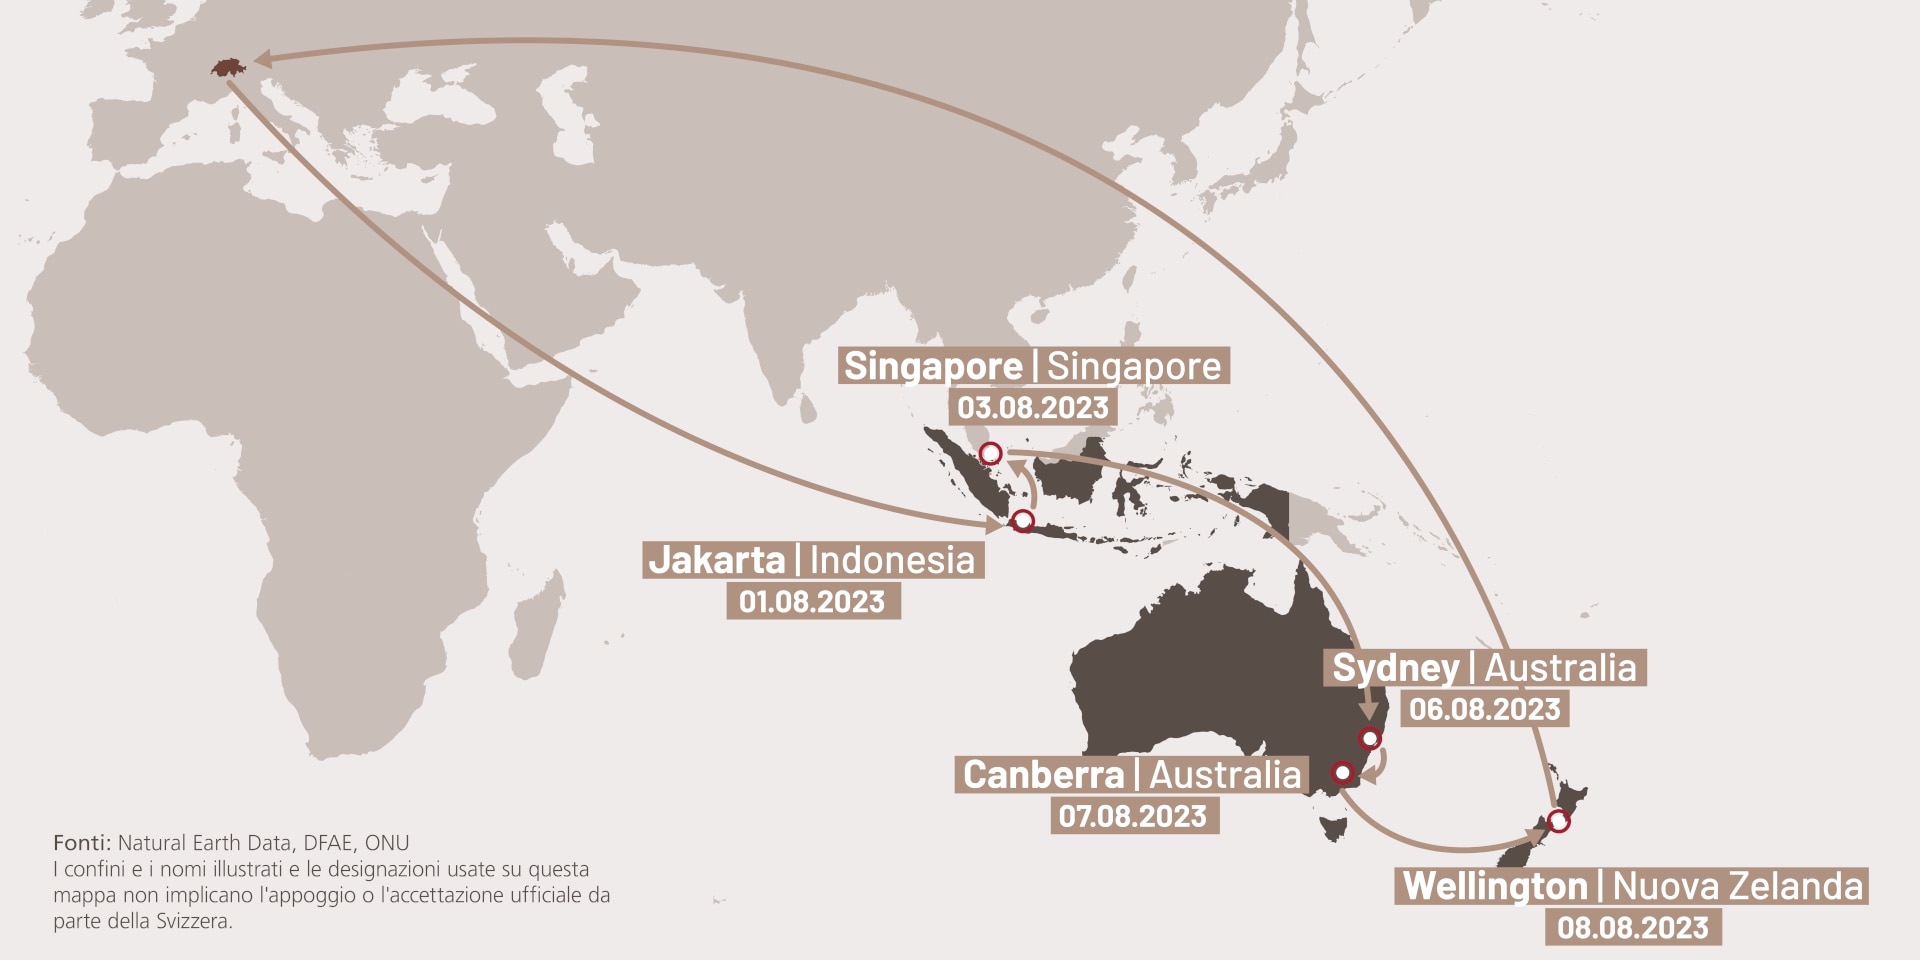 Infografica relativa alle tel viaggio di Ignazio Cassis in Indonesia, Singapore, Australia e Nuova Zelanda.